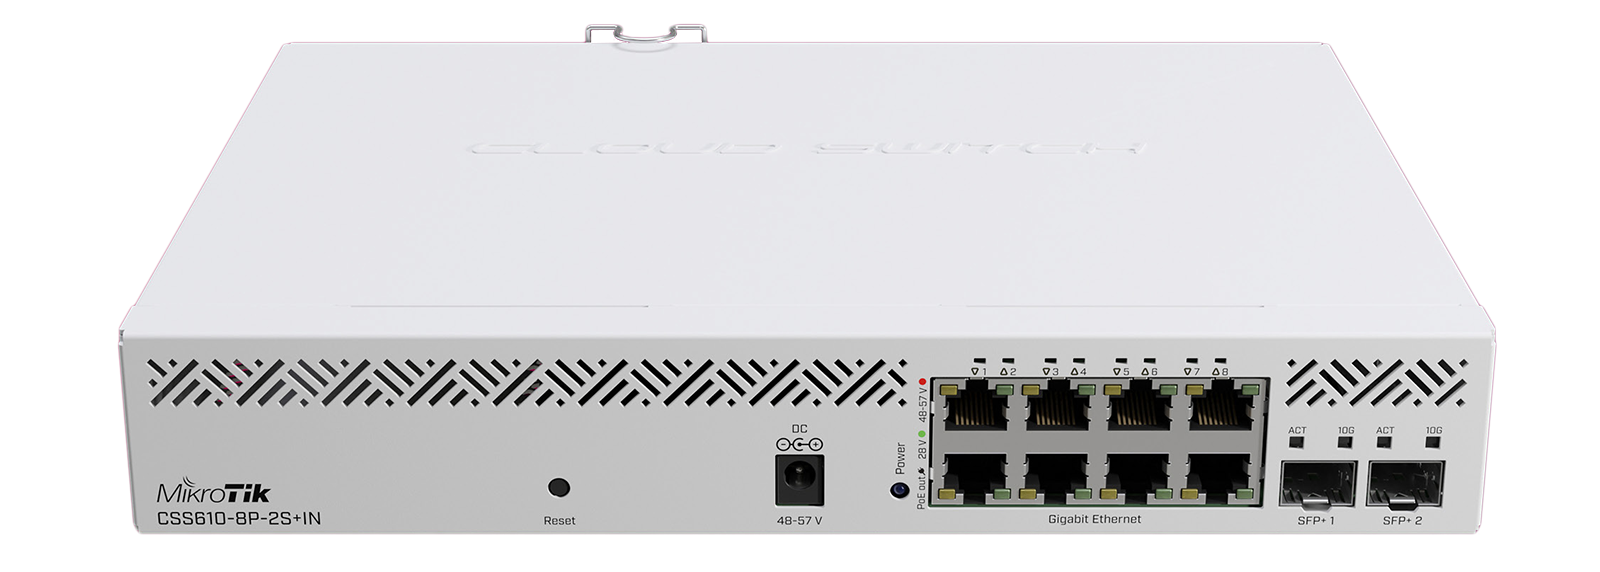 MikroTik CSS610-8P-2S+IN zarządzalny switch (przełącznik) 8x GE, 2x SFP+, 8x PoE OUT